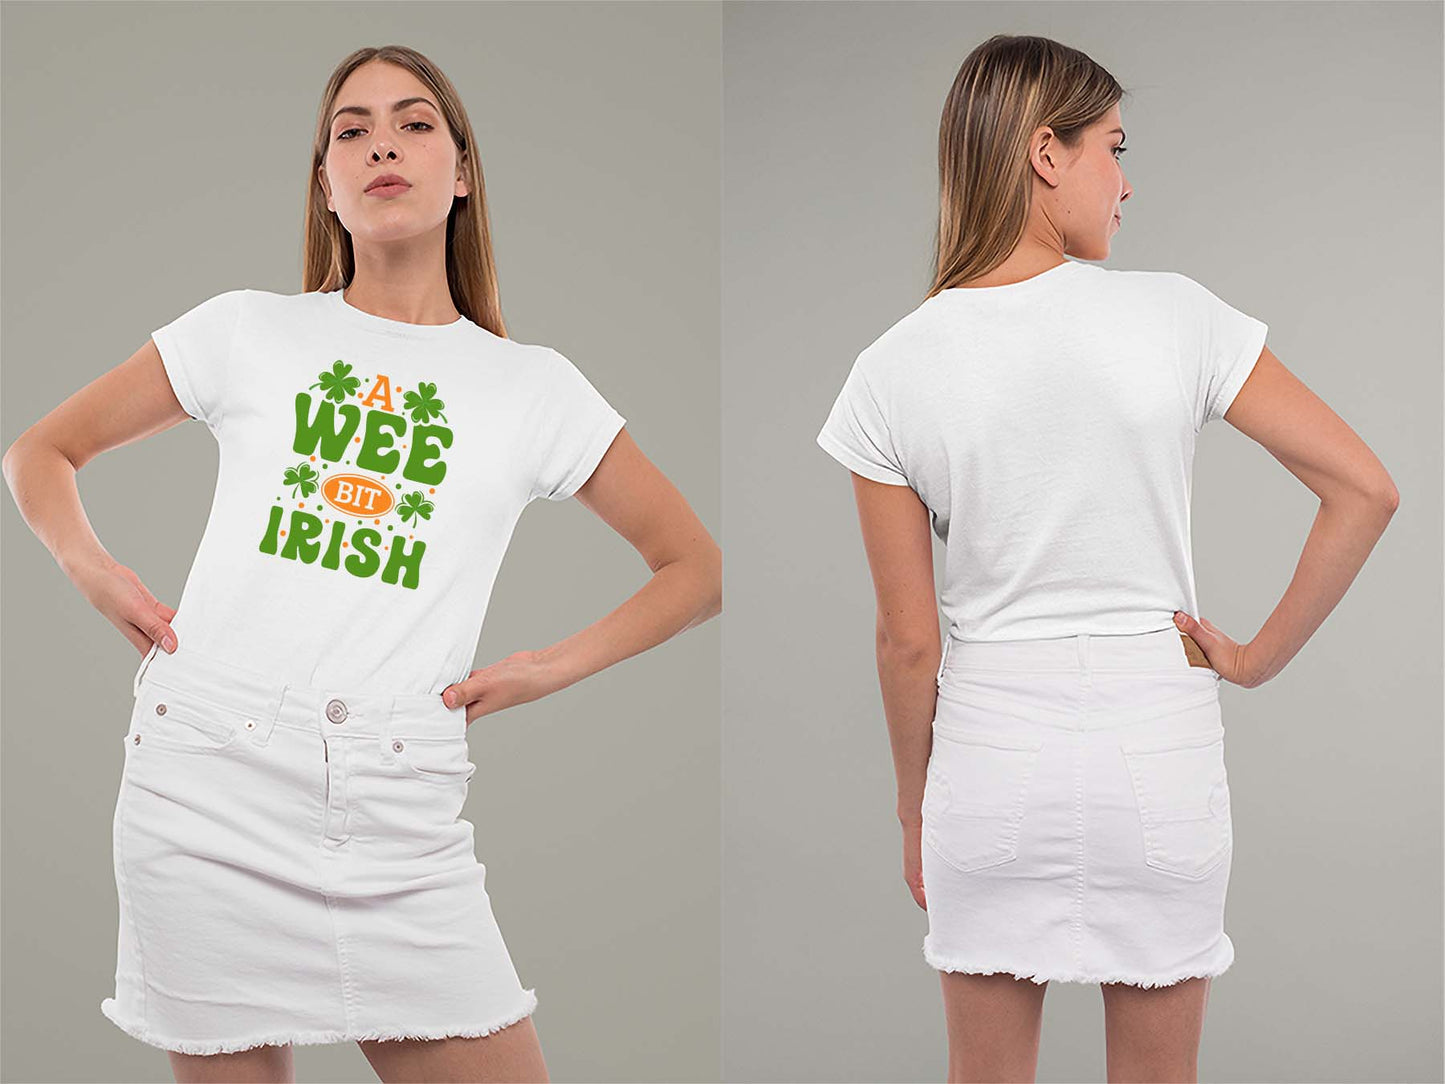 A Wee Bit Irish Ladies Crew (Round) Neck Shirt Small White